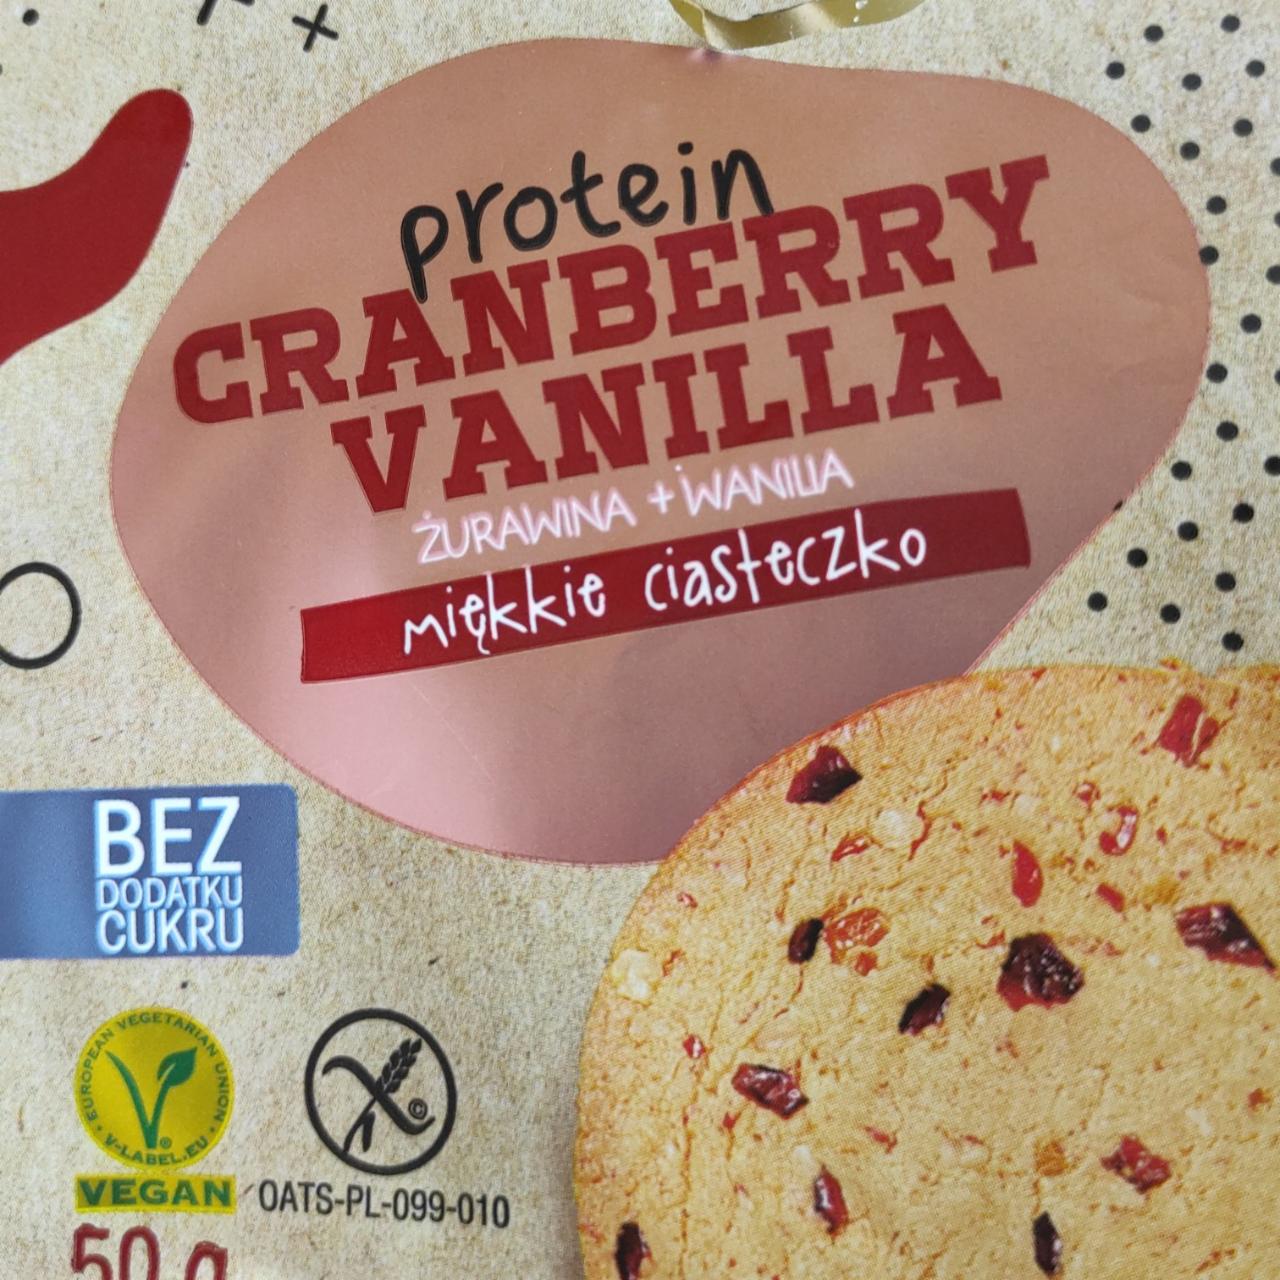 Zdjęcia - protein cranberry vanilla miękkie ciasteczko Frank&Oli